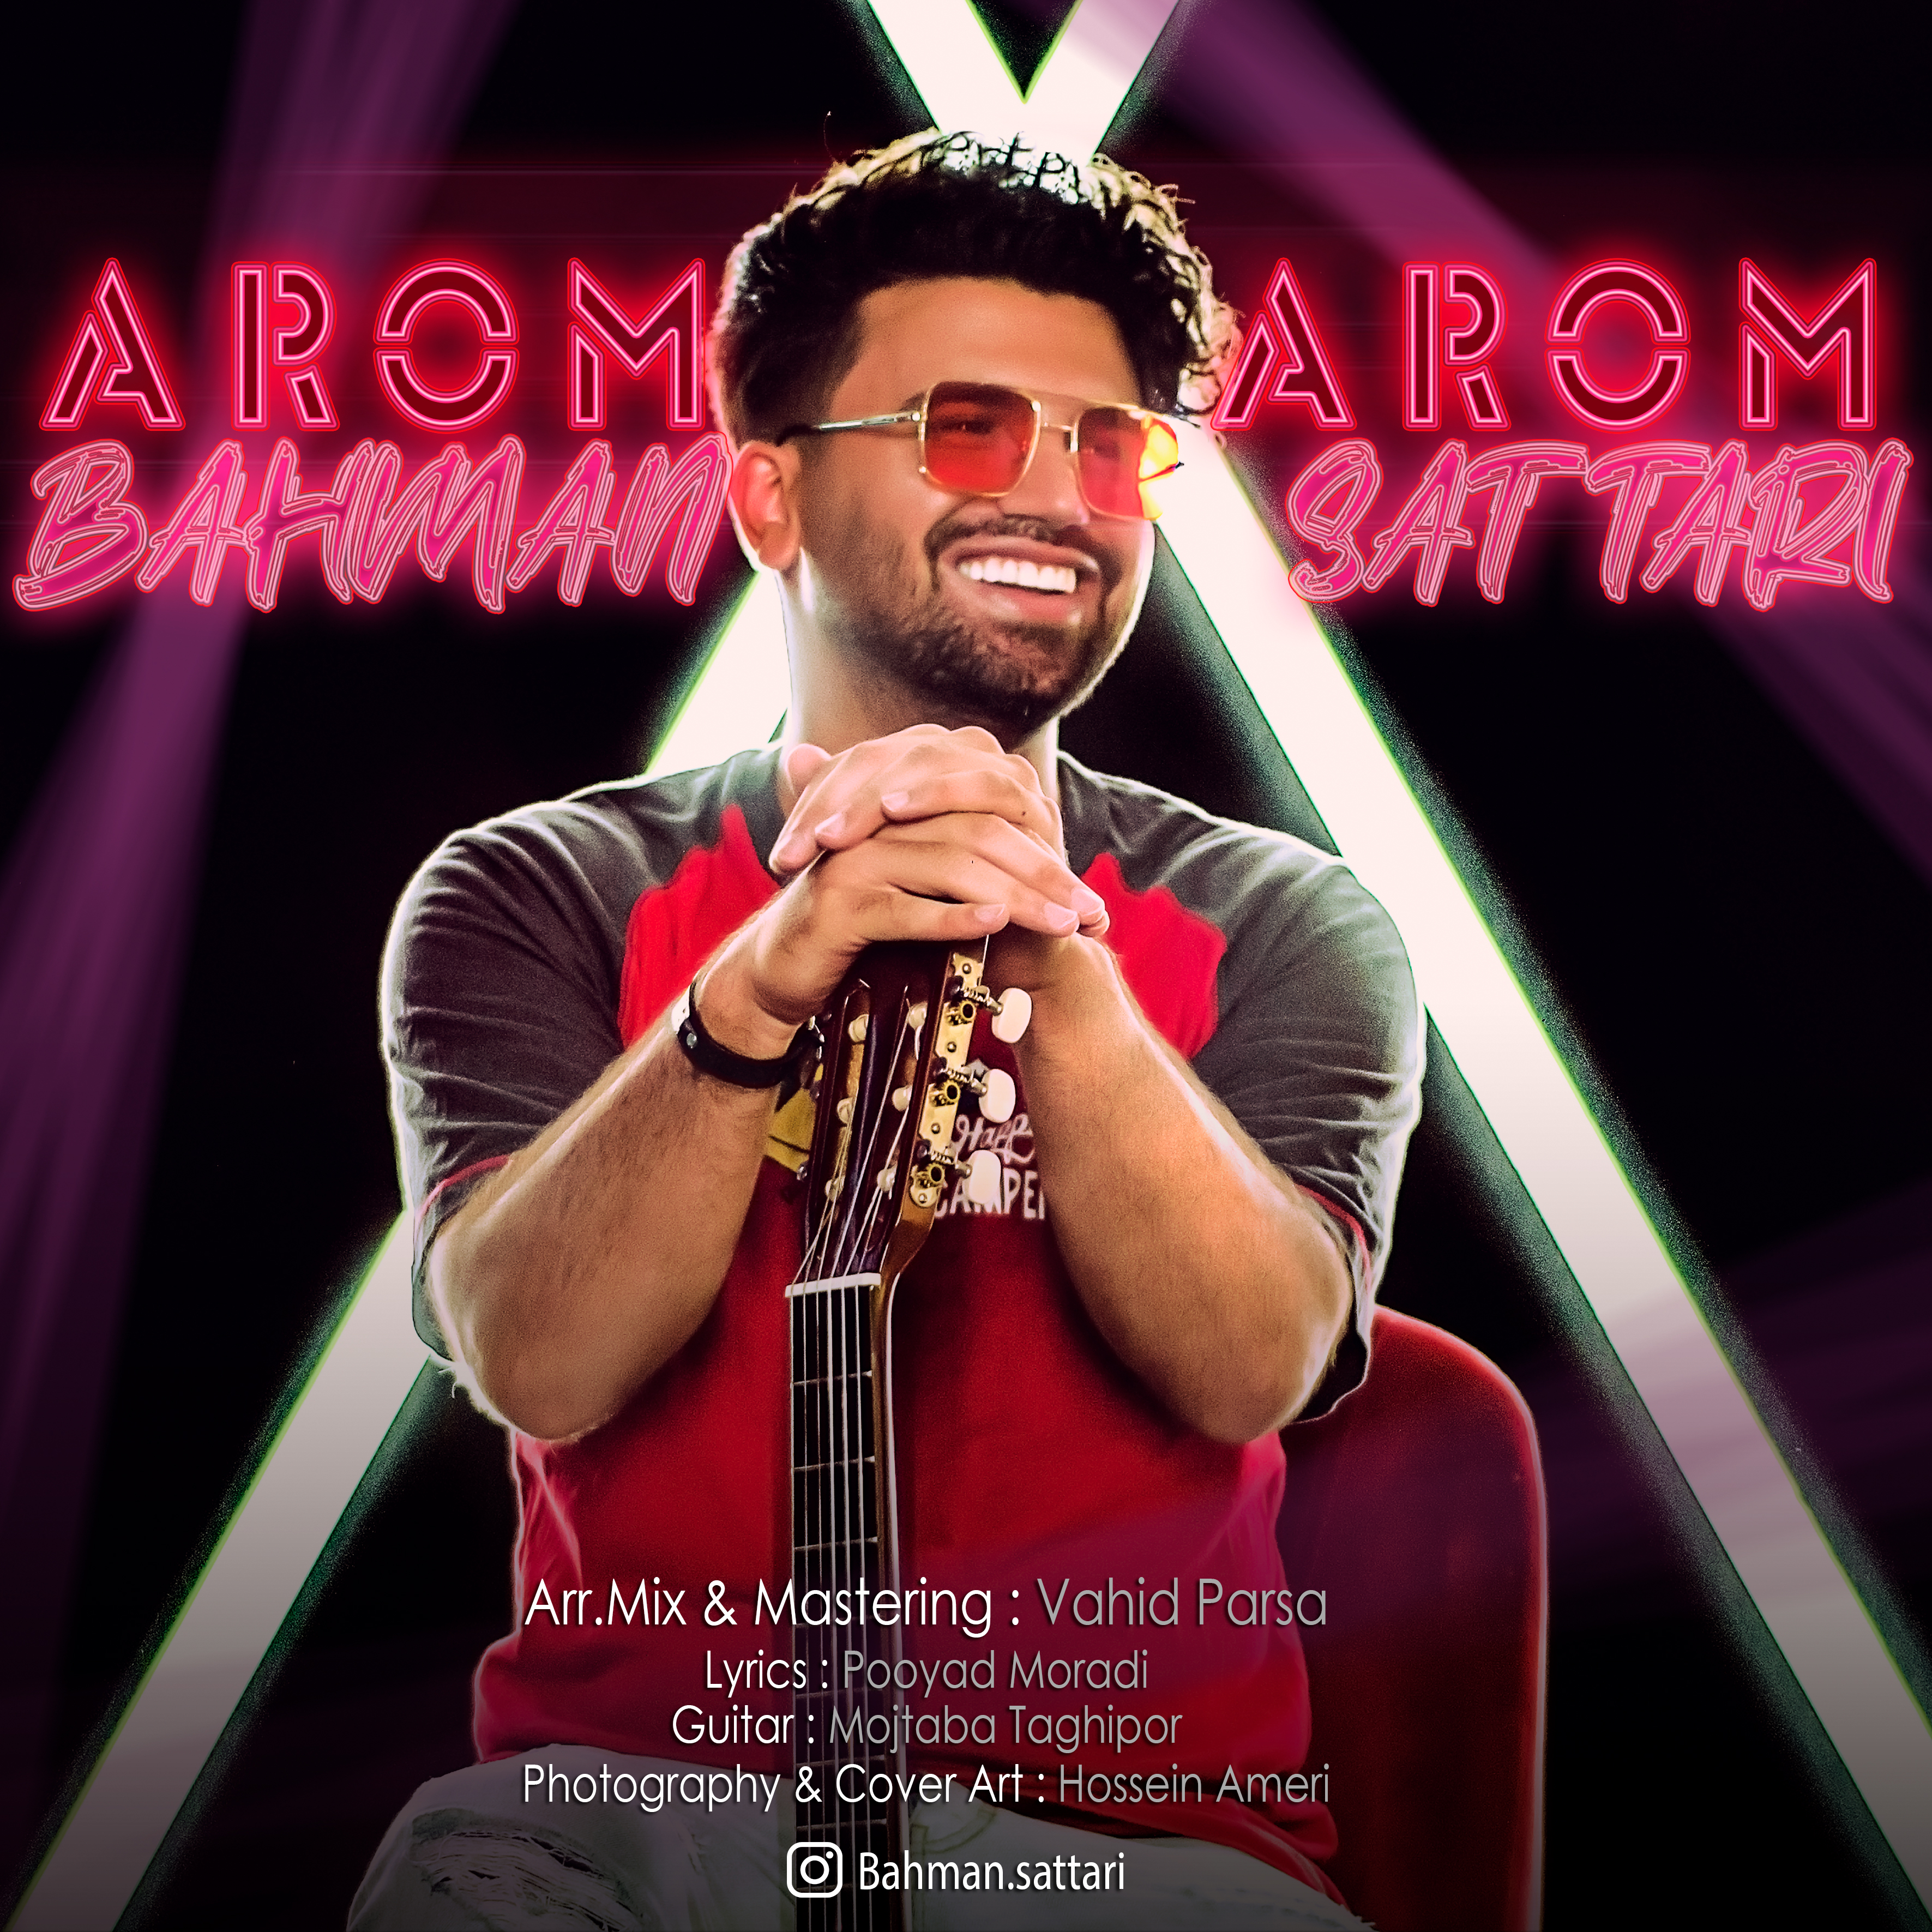  دانلود آهنگ جدید بهمن ستاری - آروم آروم | Download New Music By Bahman Sattari - Aroom Aroom